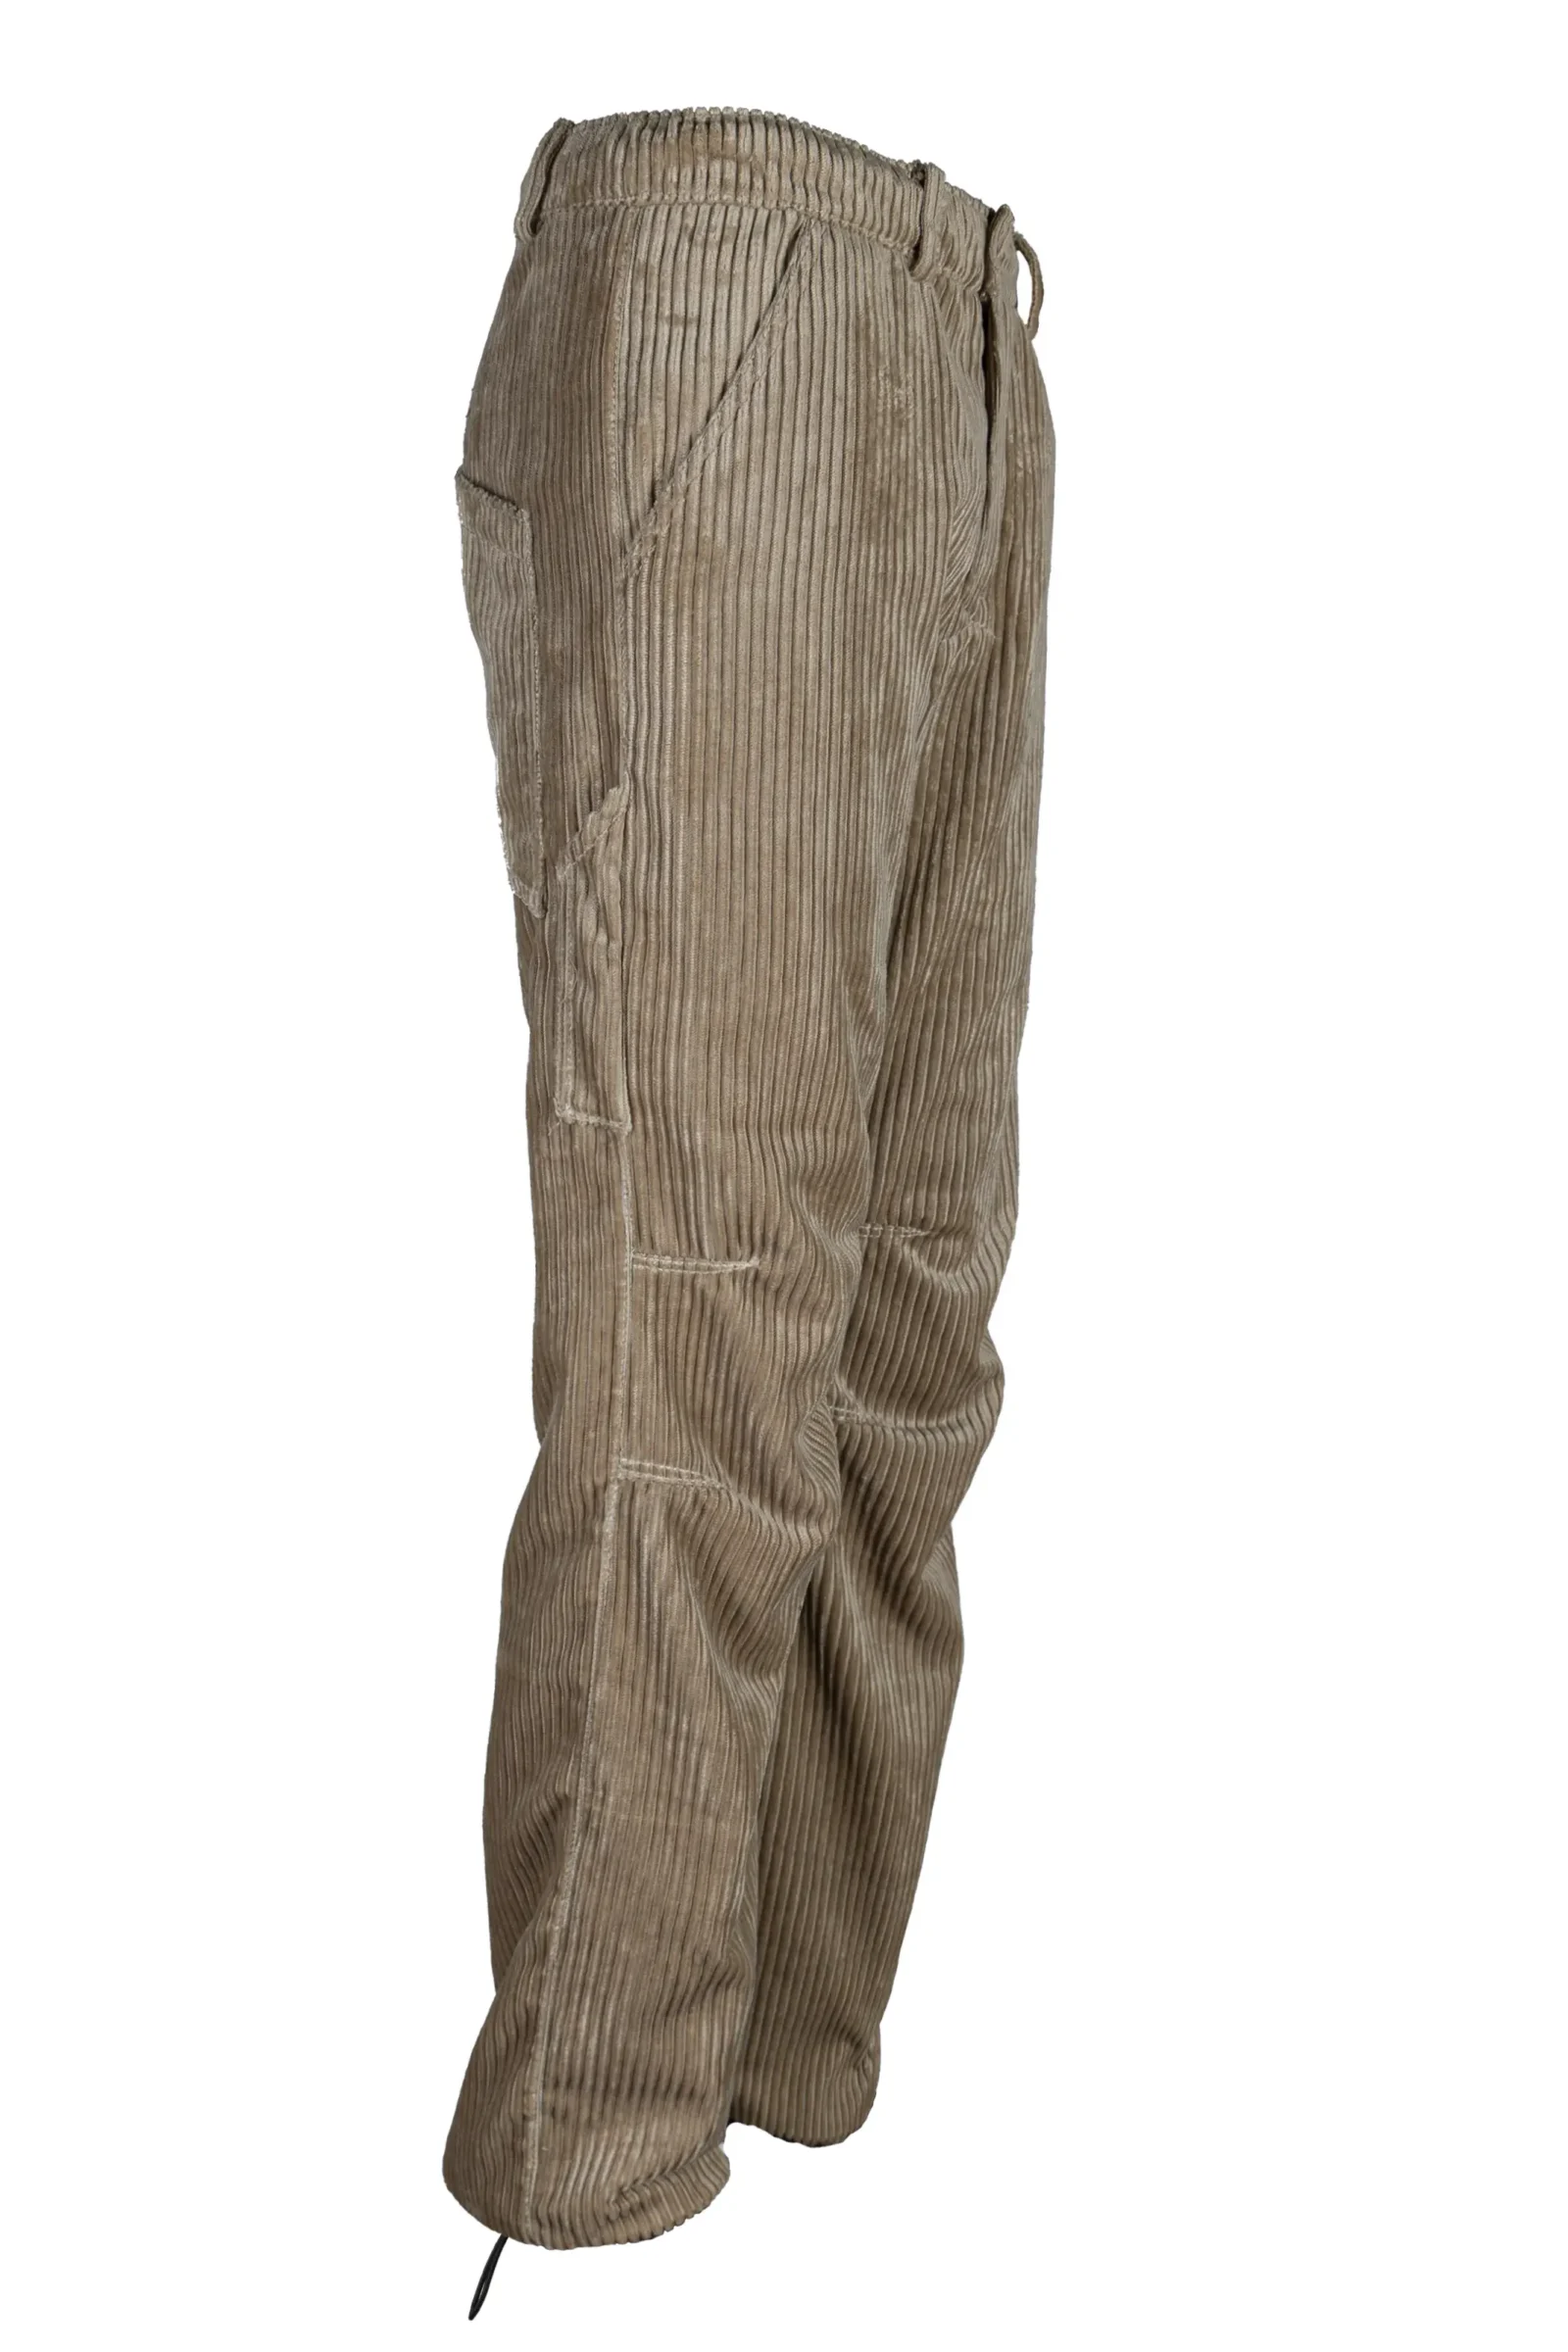 pantalon velours côtelé moyen homme - beige - GRILLO Monvic